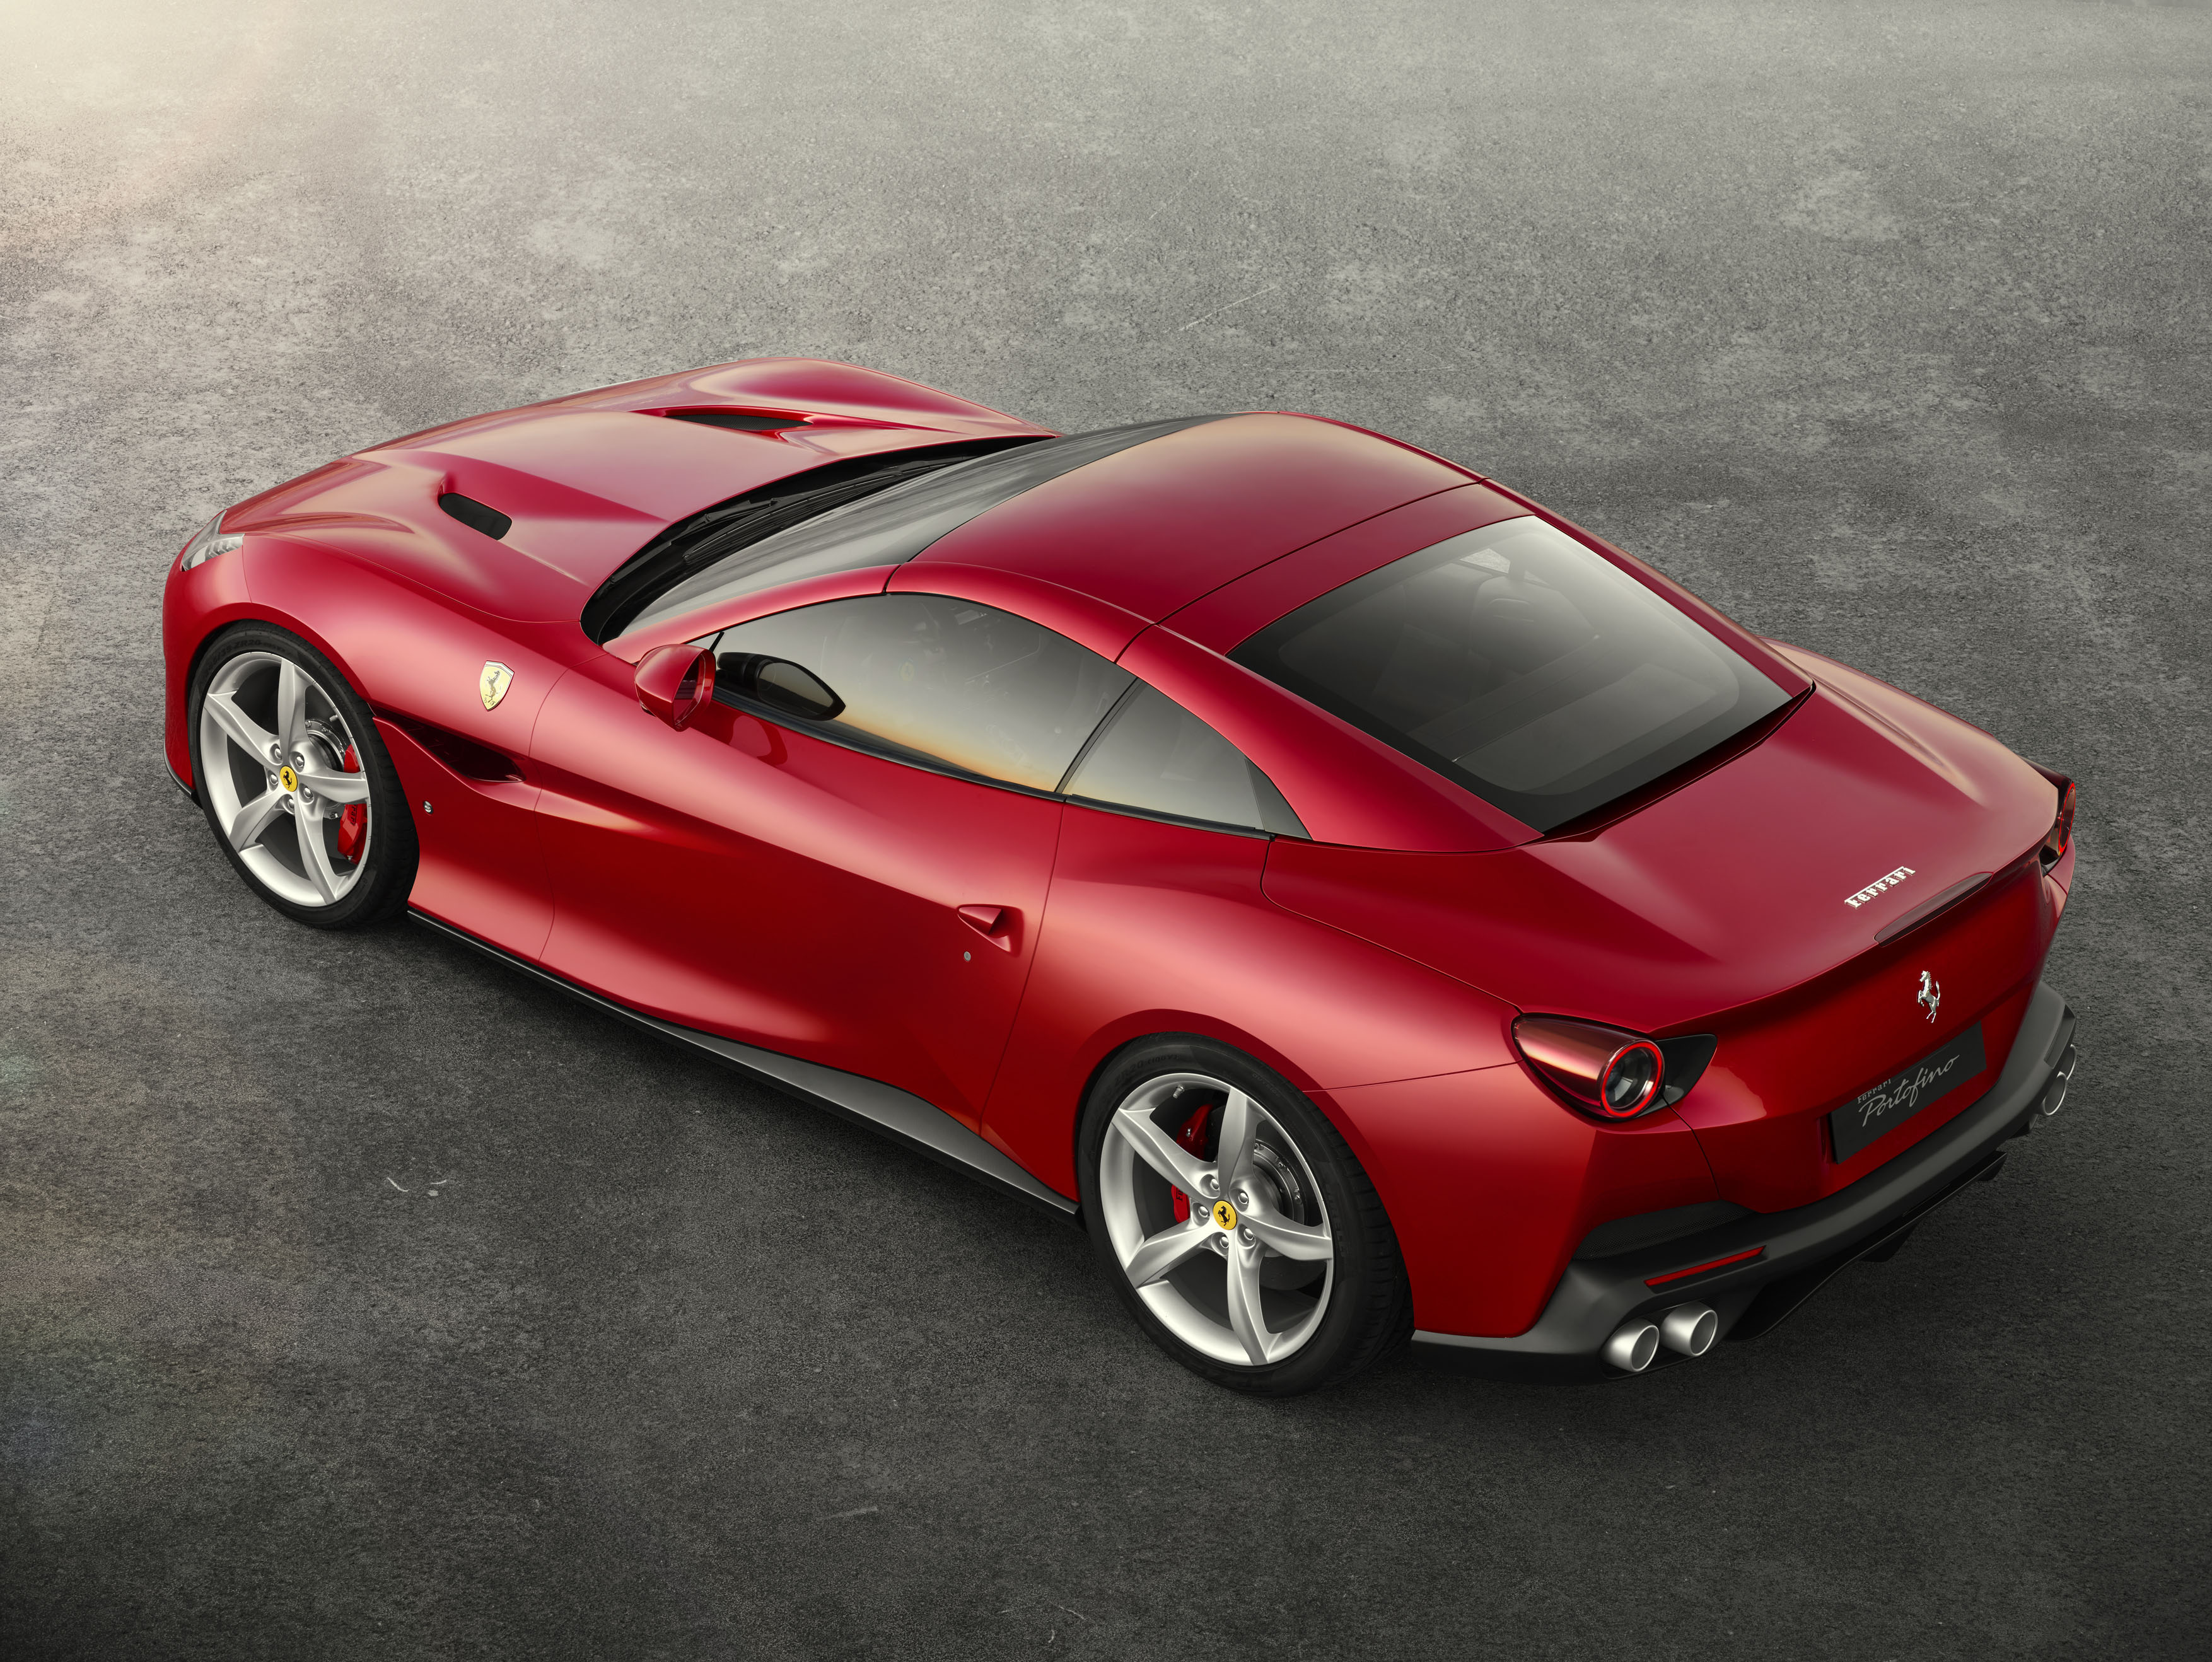 The Ferrari Portofino revealed 